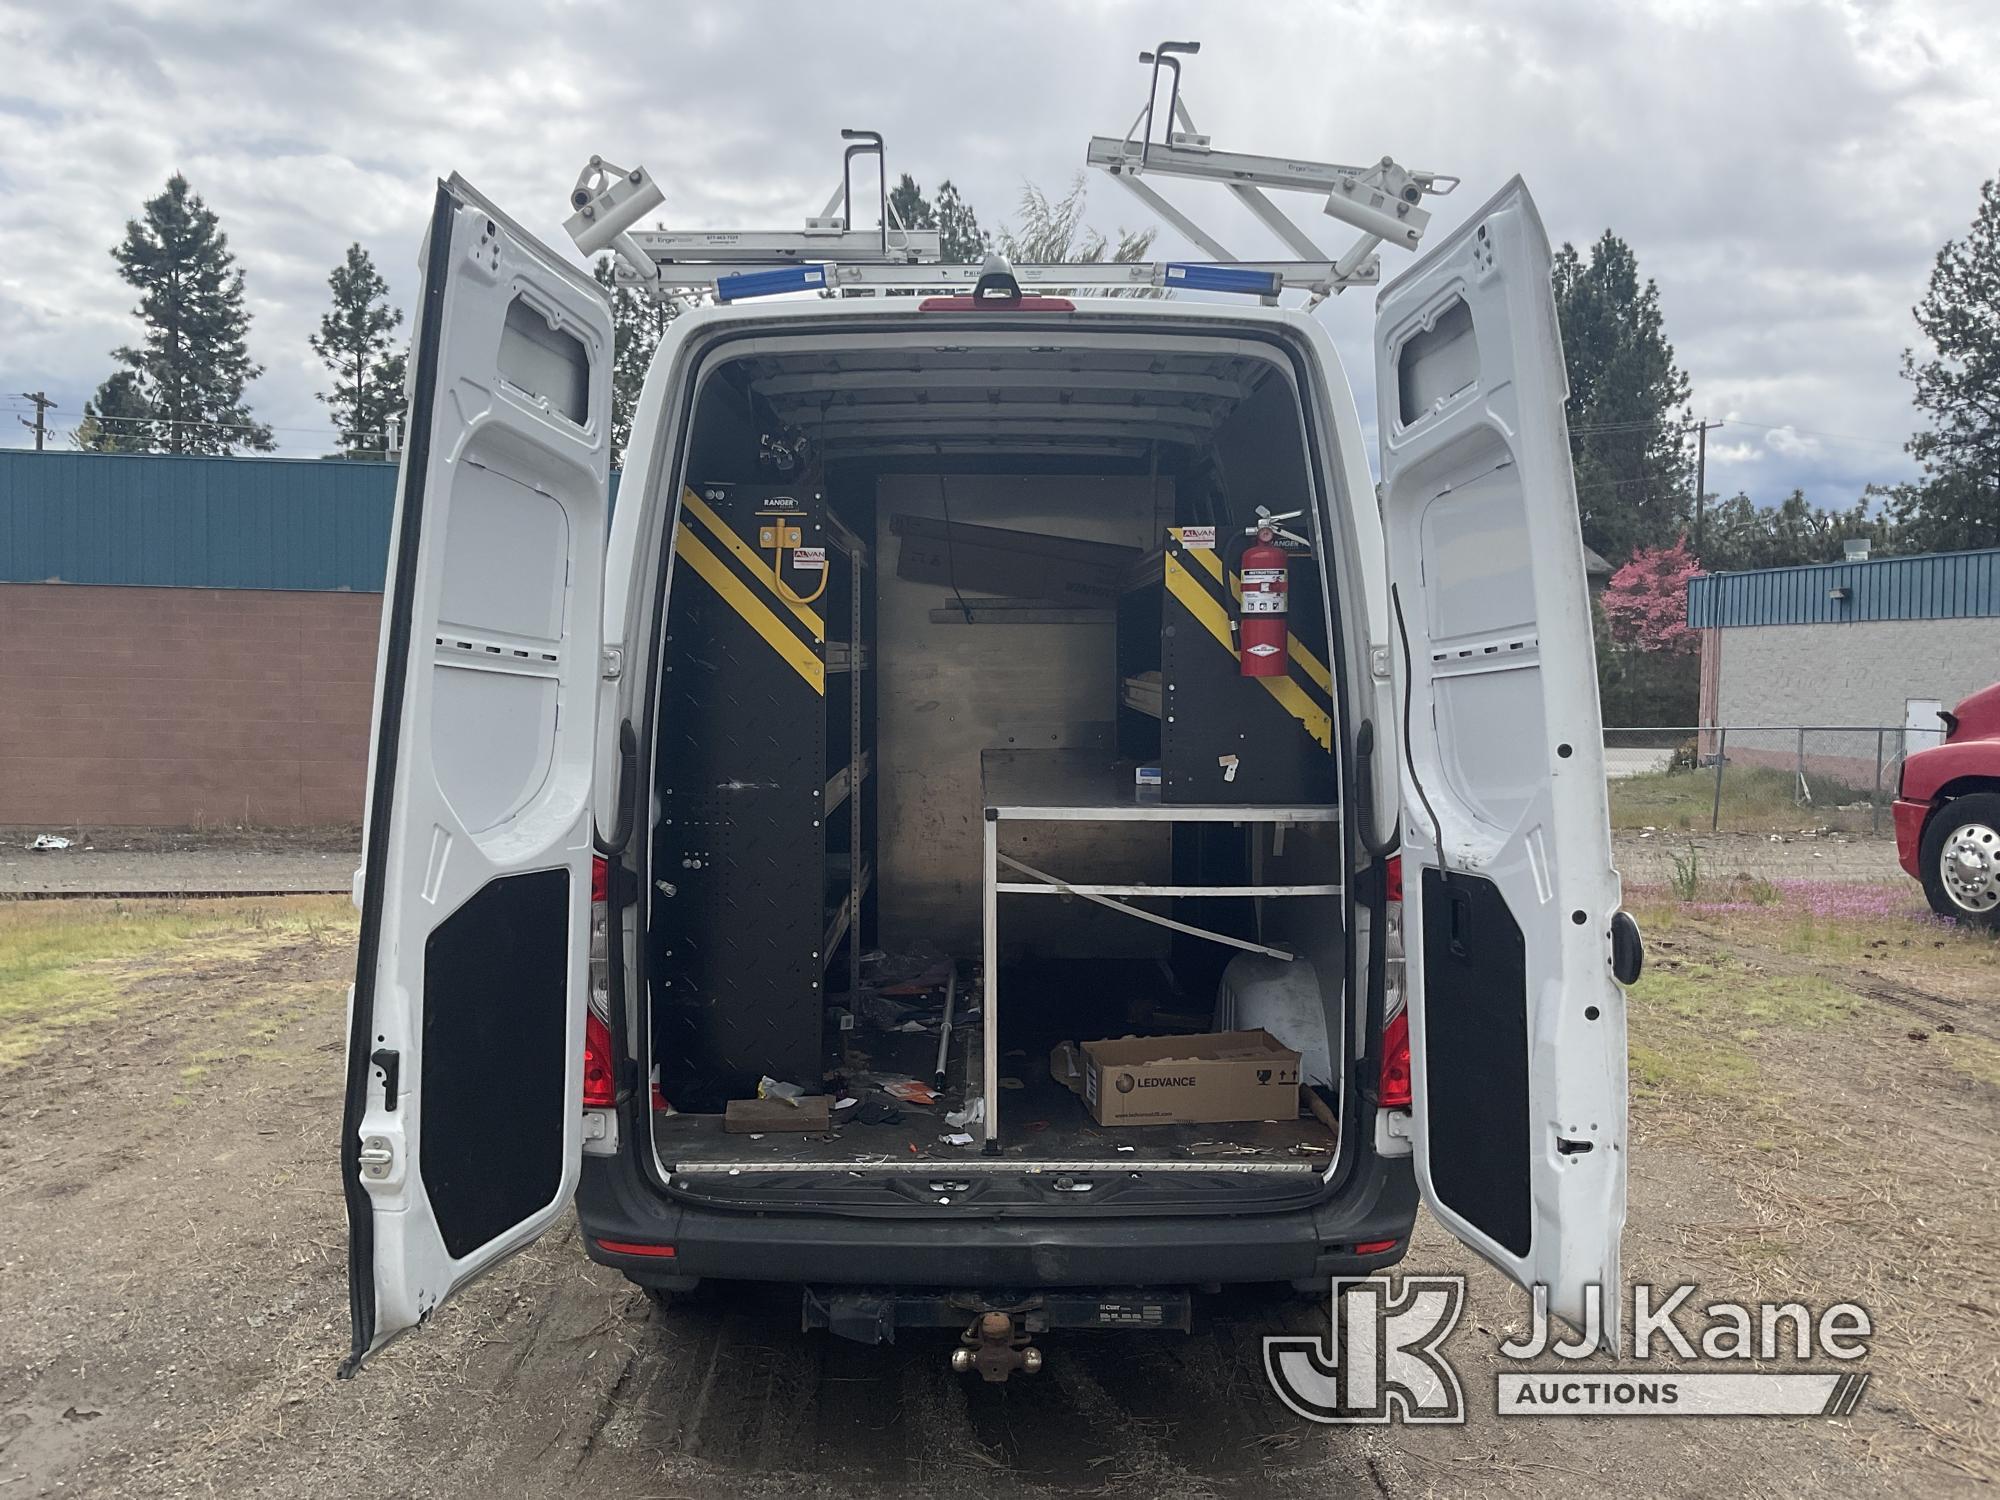 (Post Falls, ID) 2019 Mercedes-Benz Sprinter Van Cargo Van Not Running, Condition Unknown, Requires